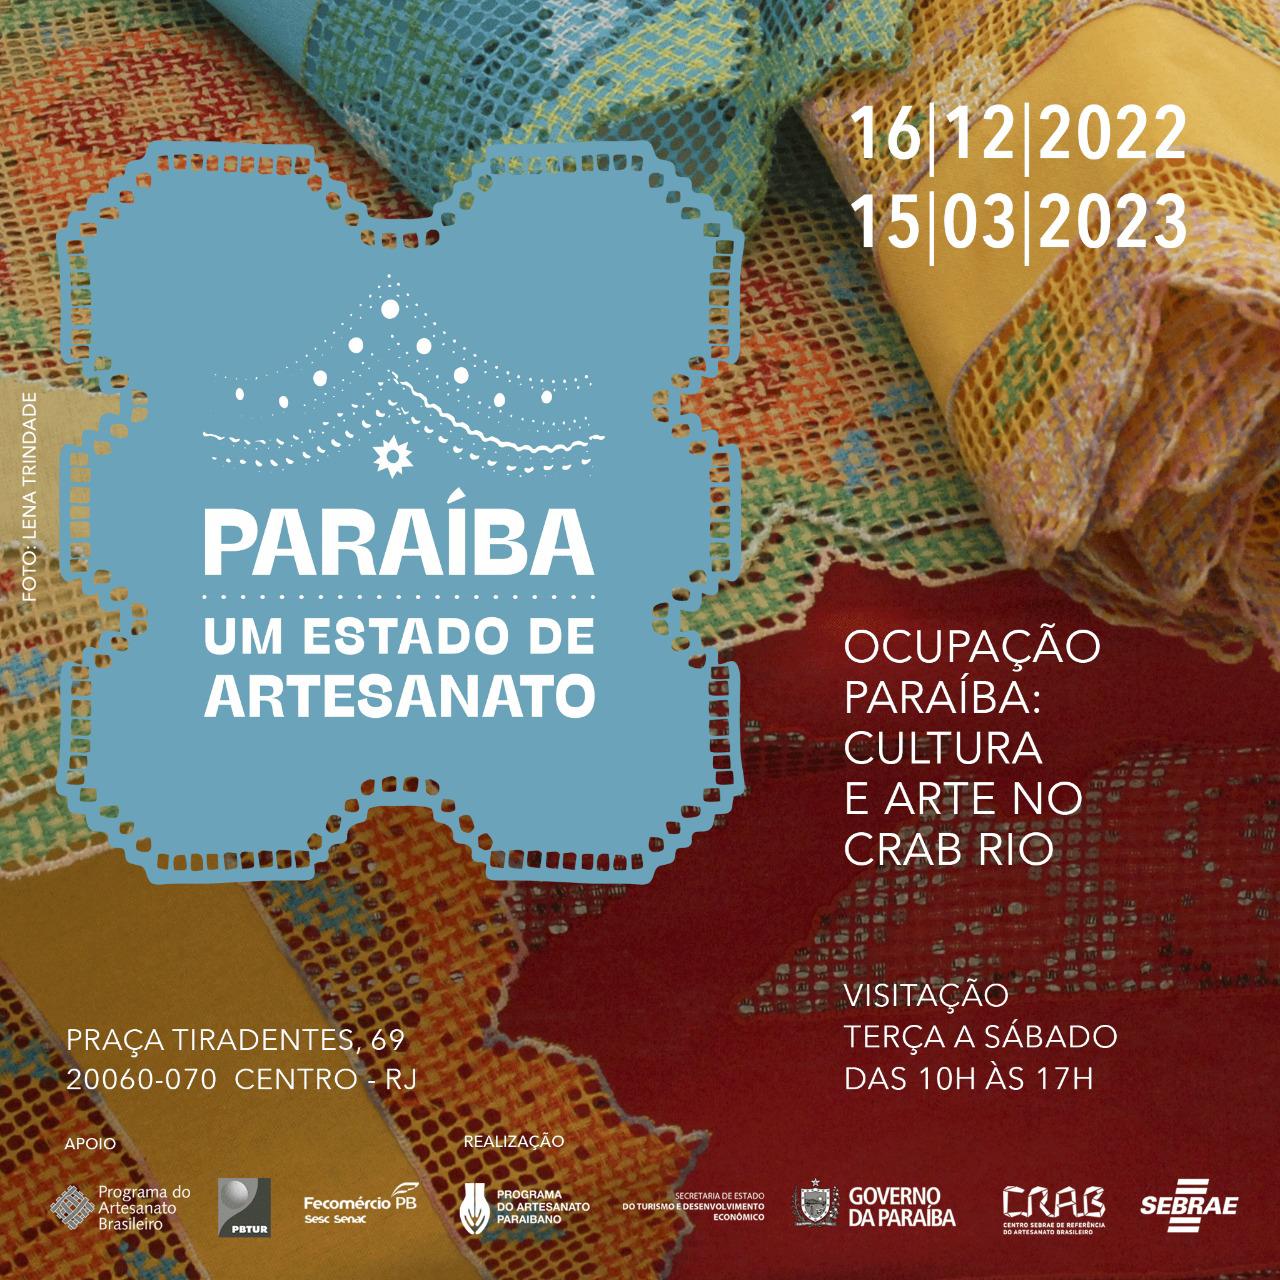 CRAB Prefeita de Monteiro representa o Cariri no maior evento de Artesanato do Brasil